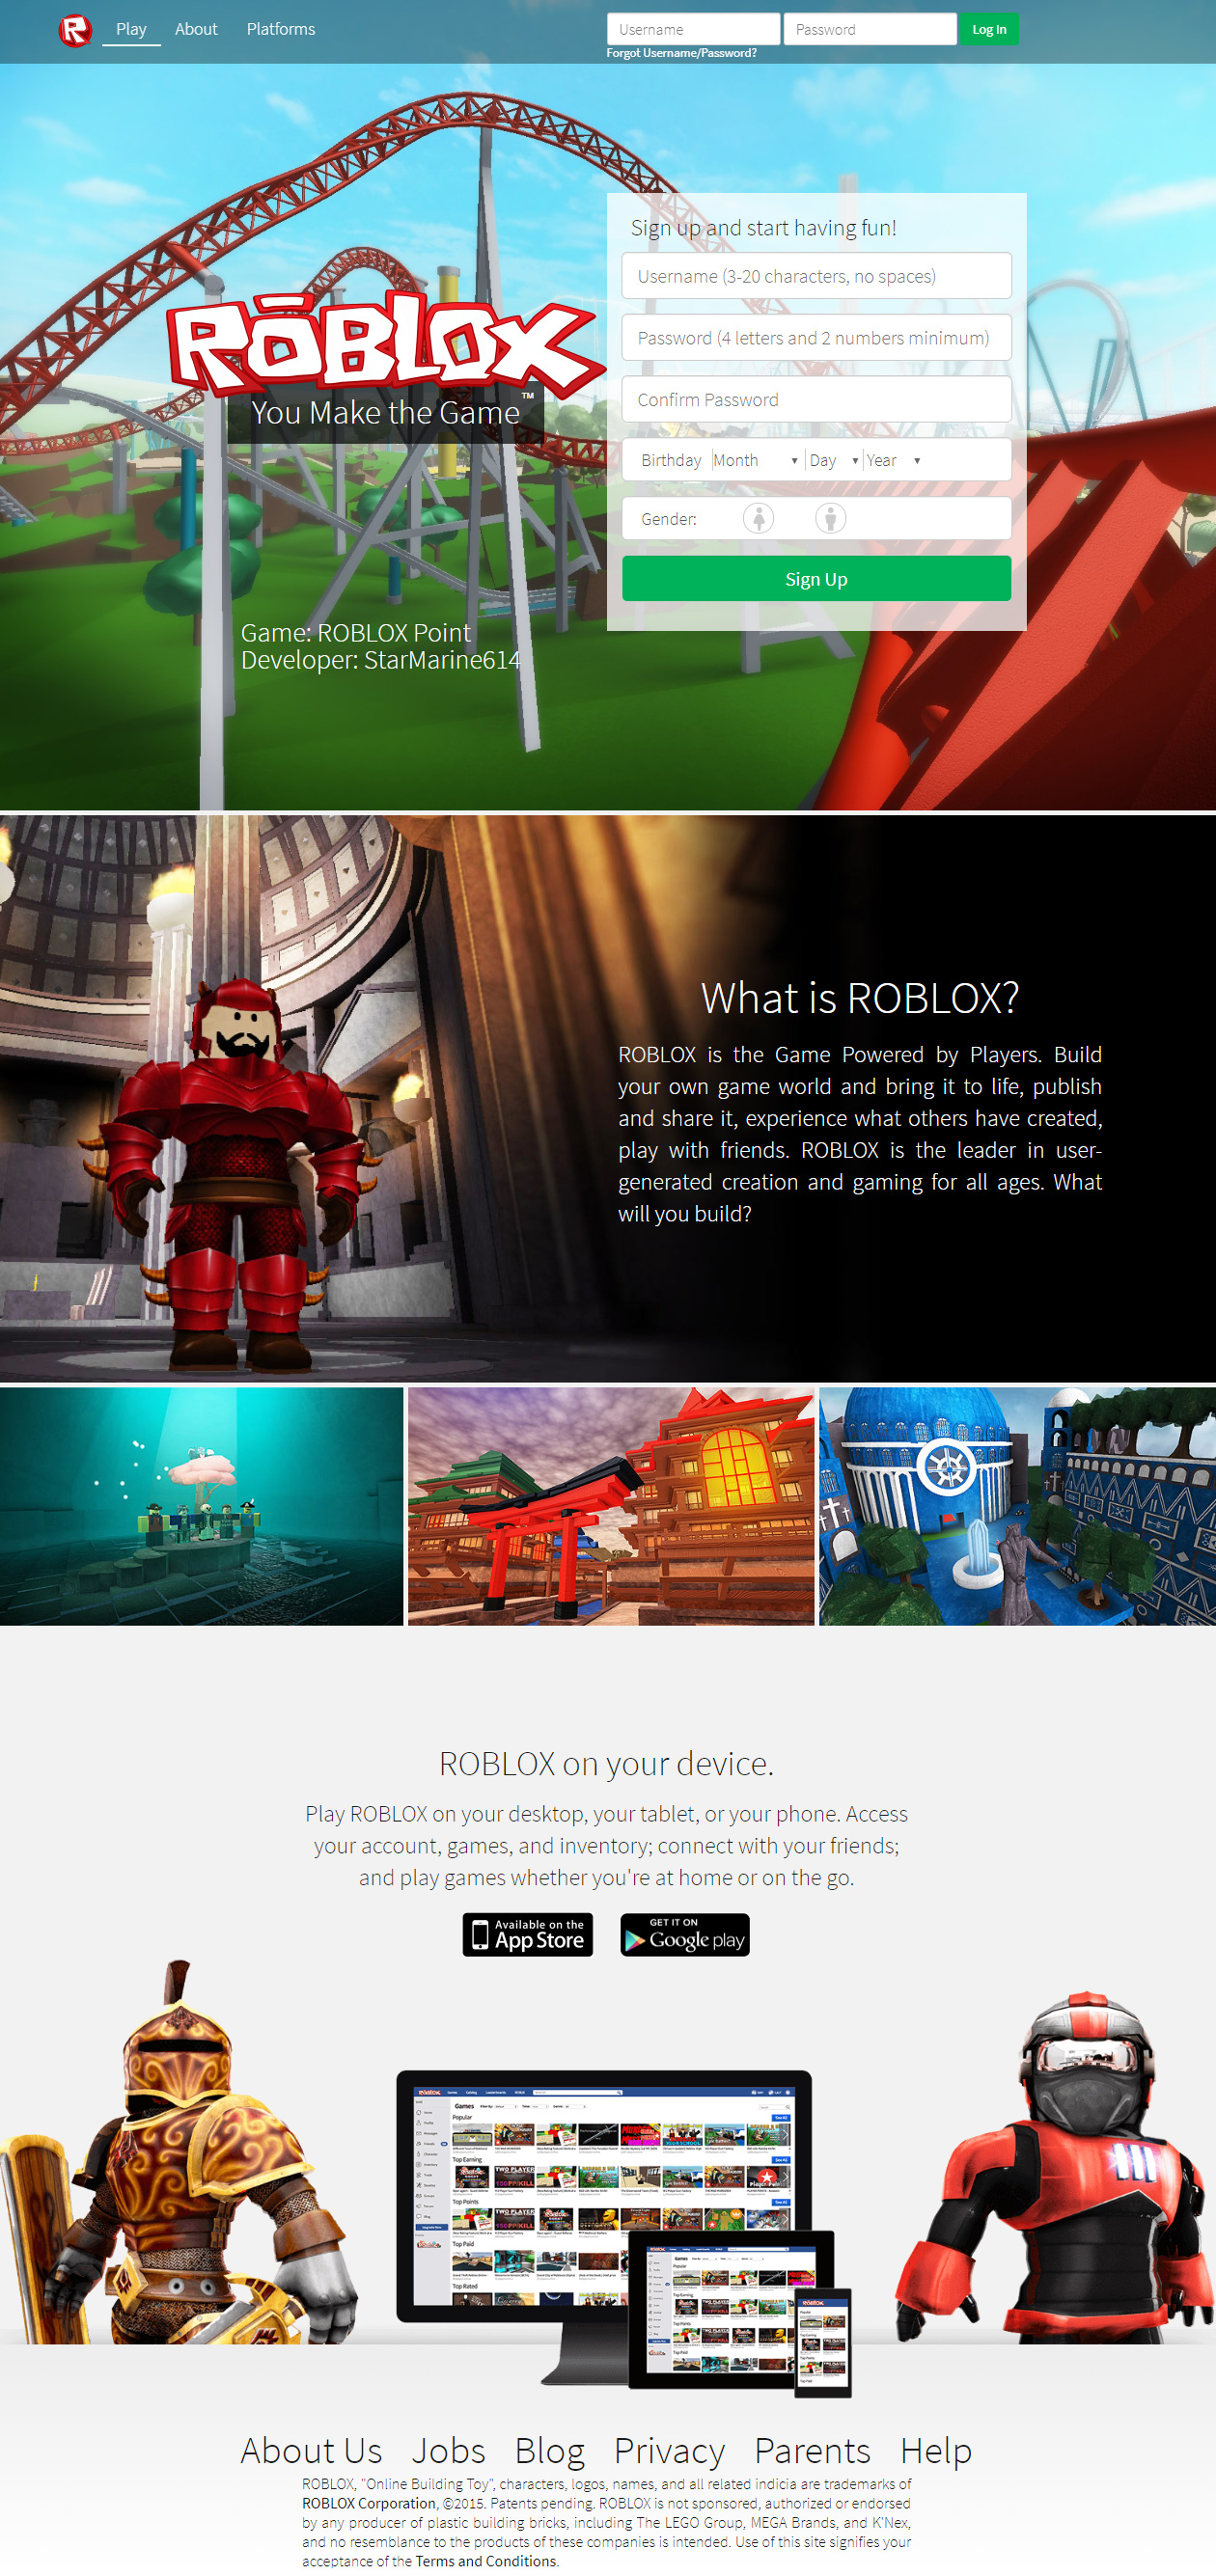 Roblox website in 2015